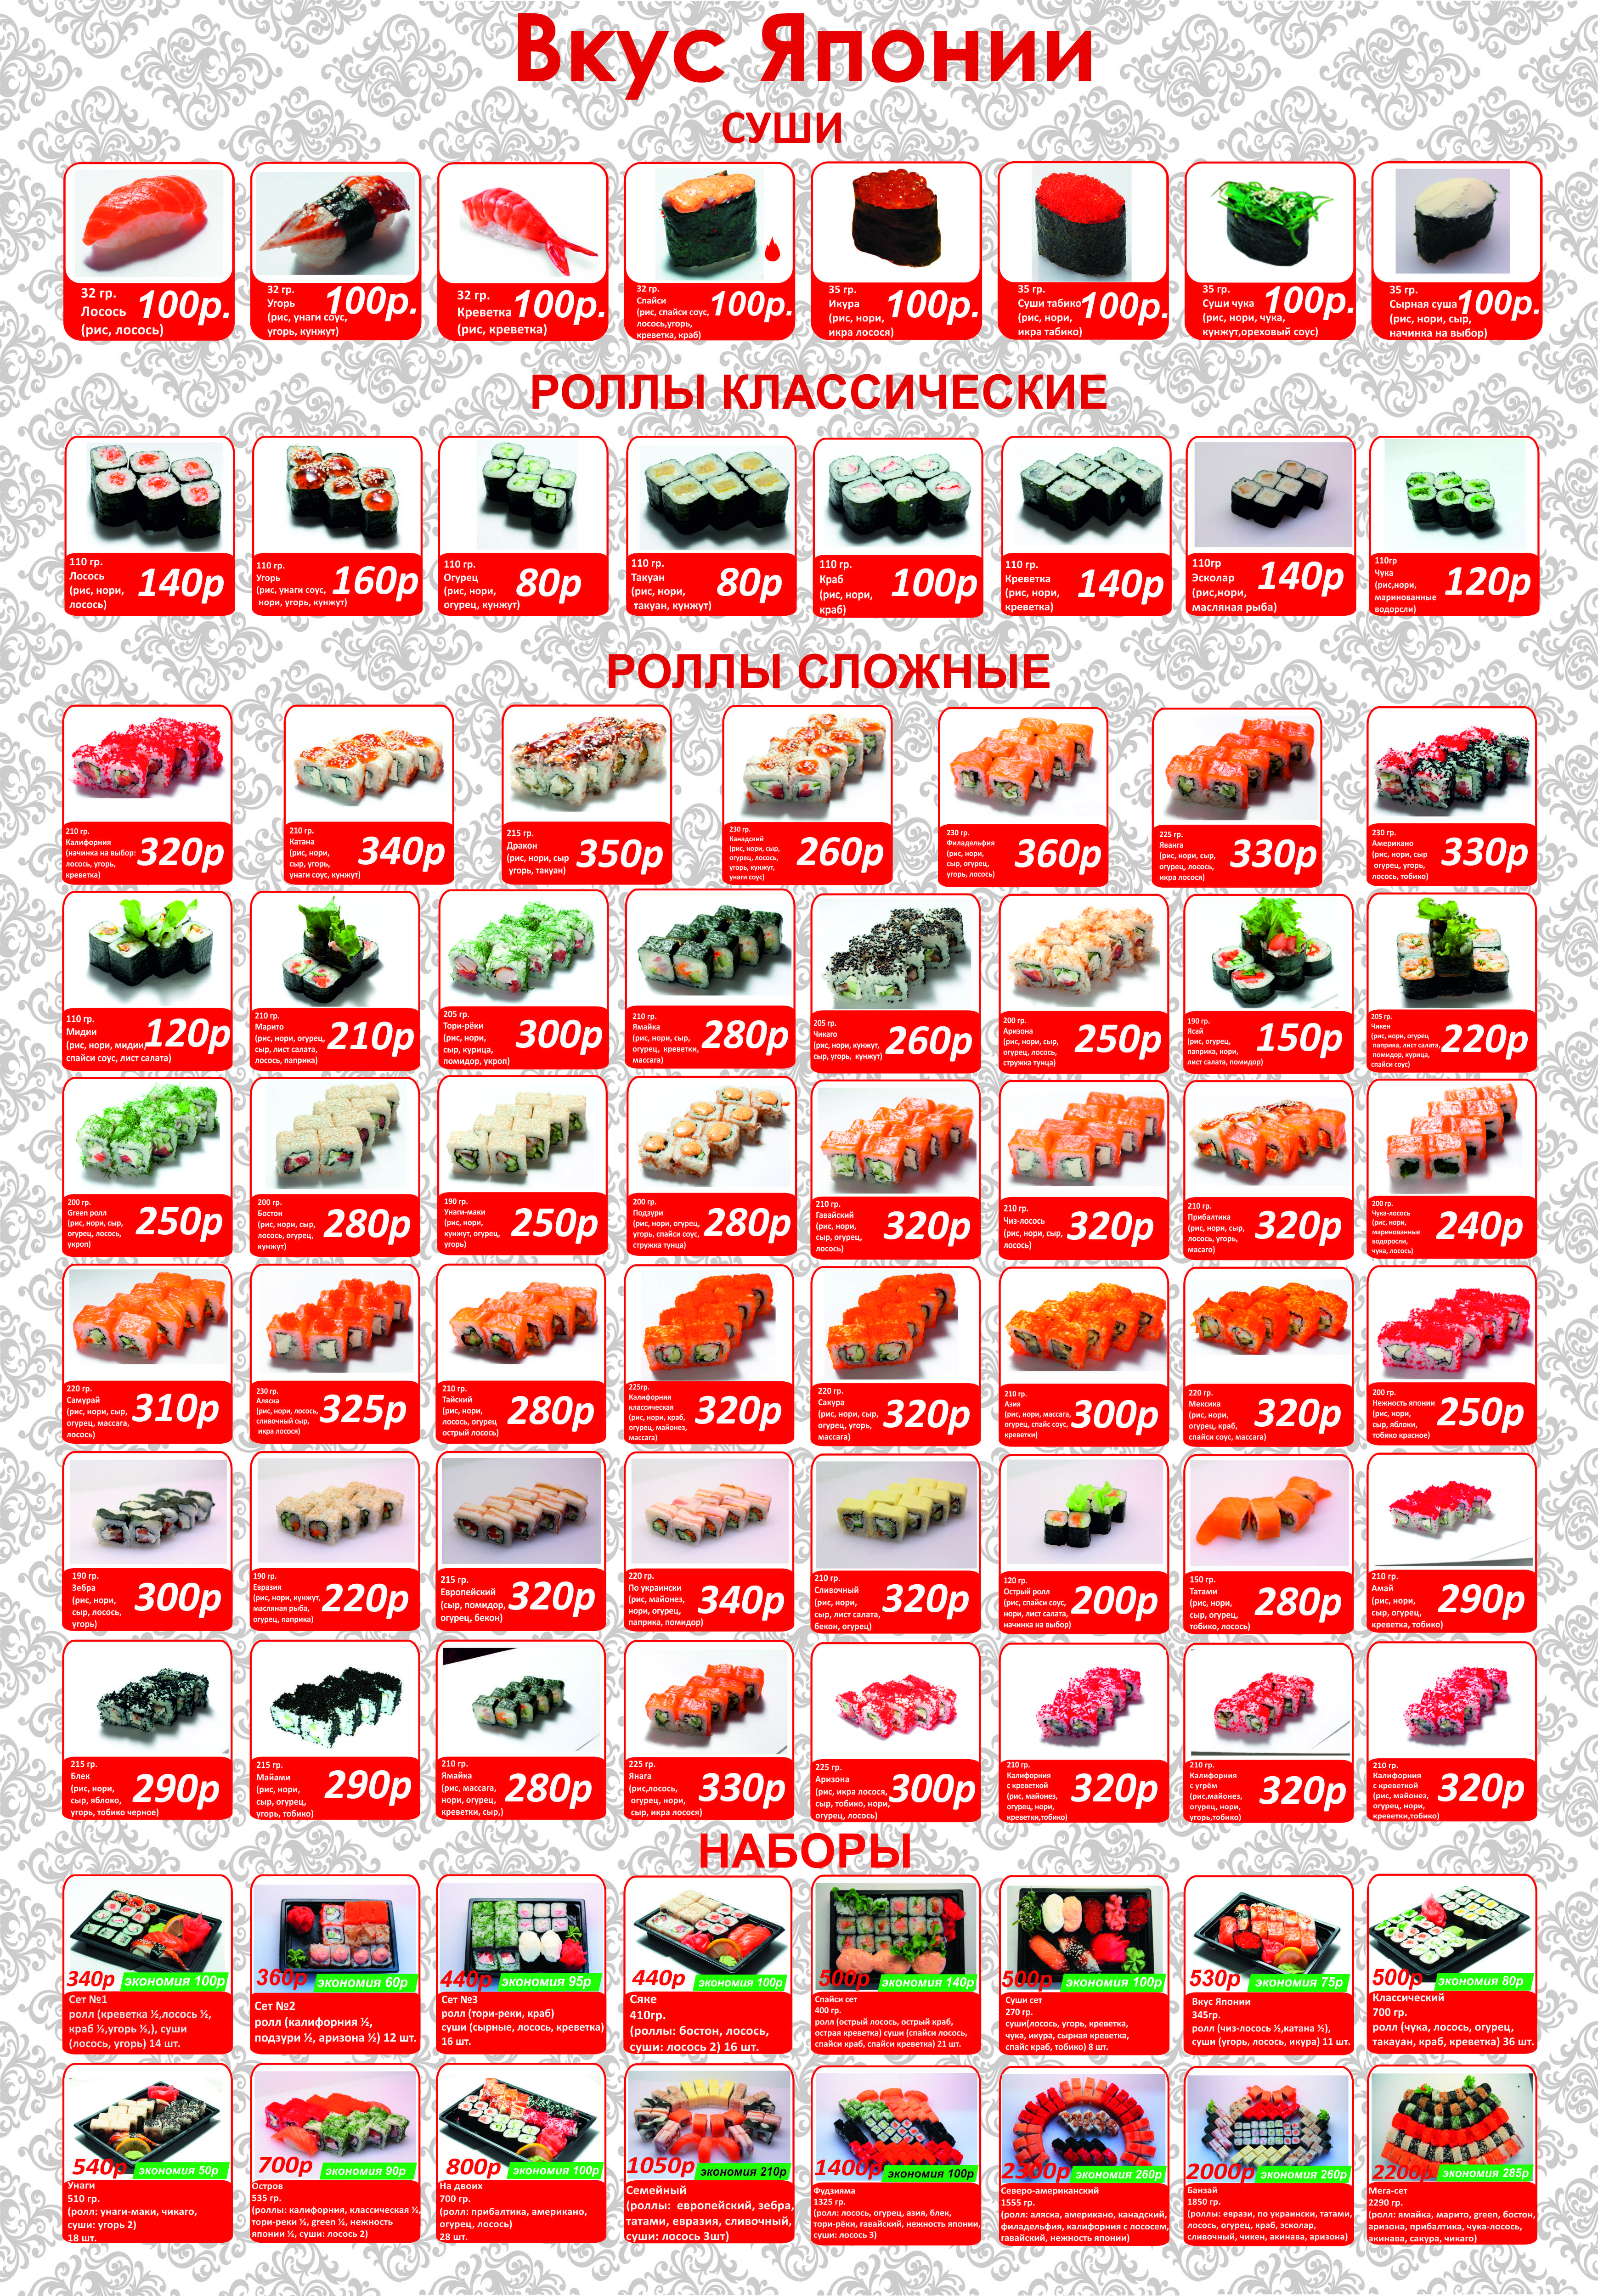 Суши какие вкусы (120) фото